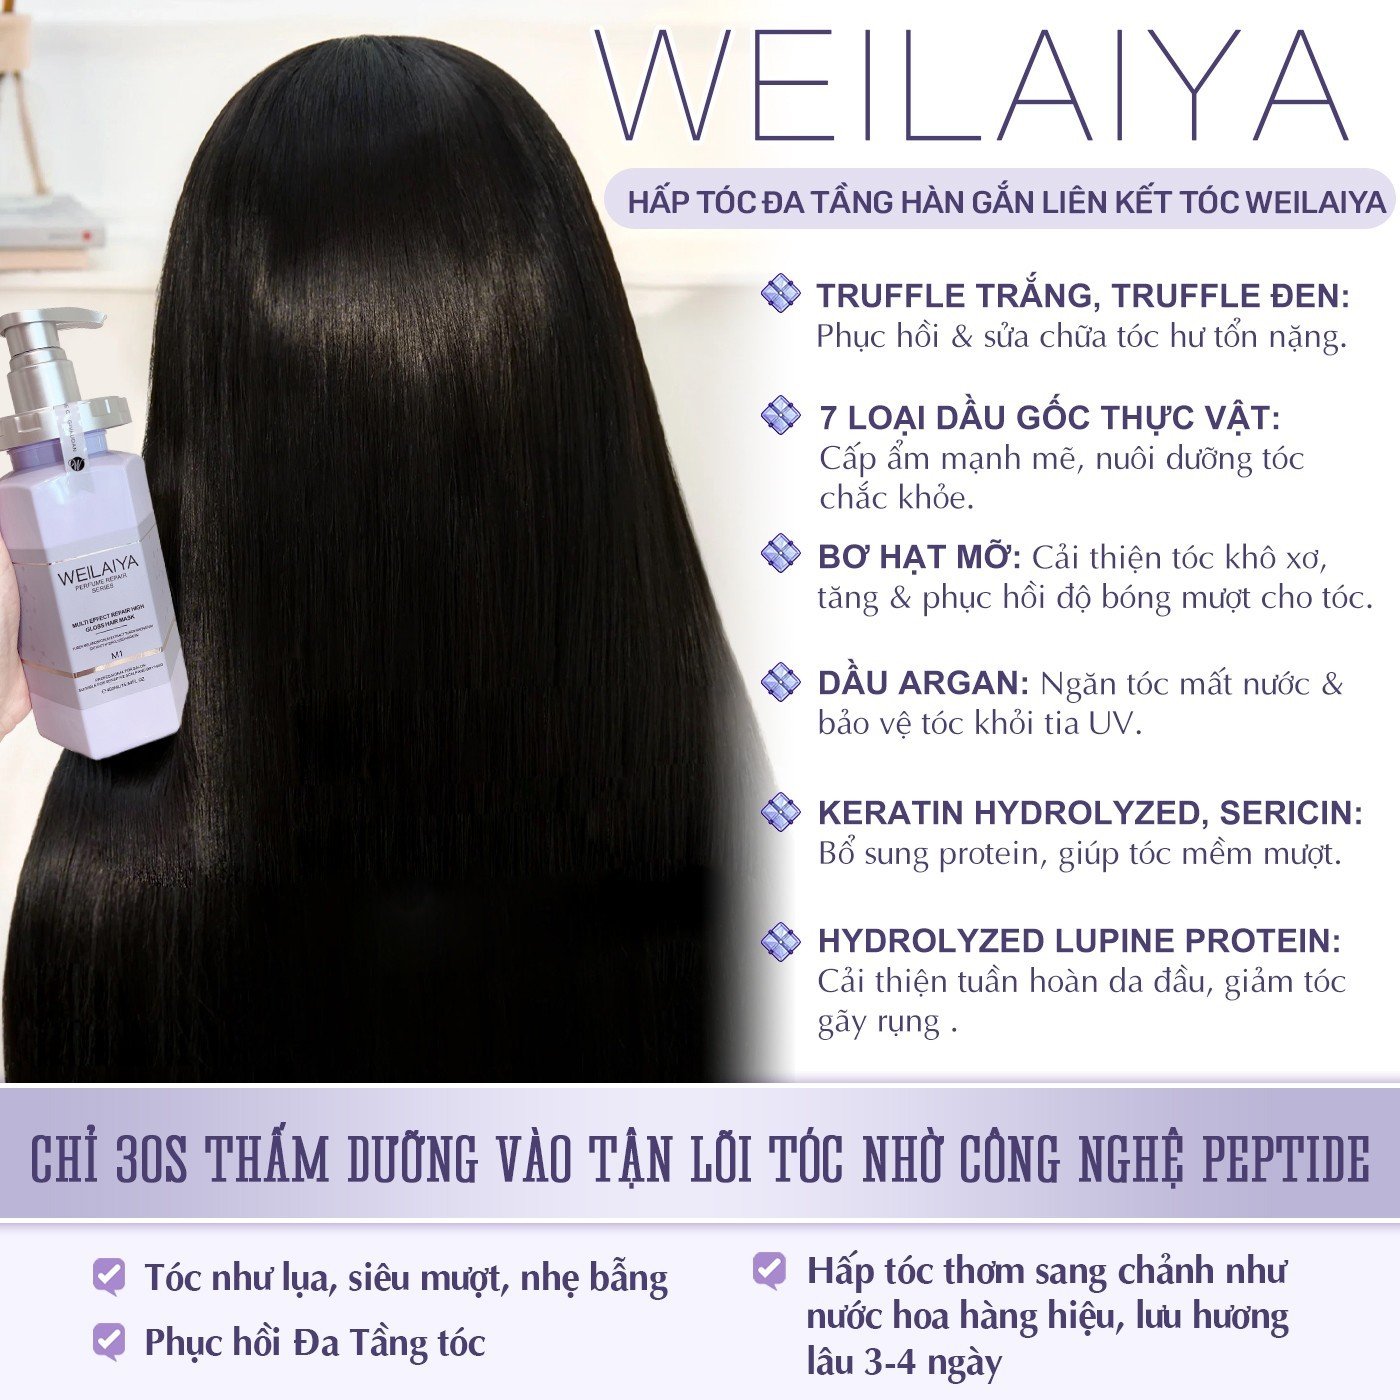 Minisize Dầu hấp phục hồi liên kết tóc Weilaiya